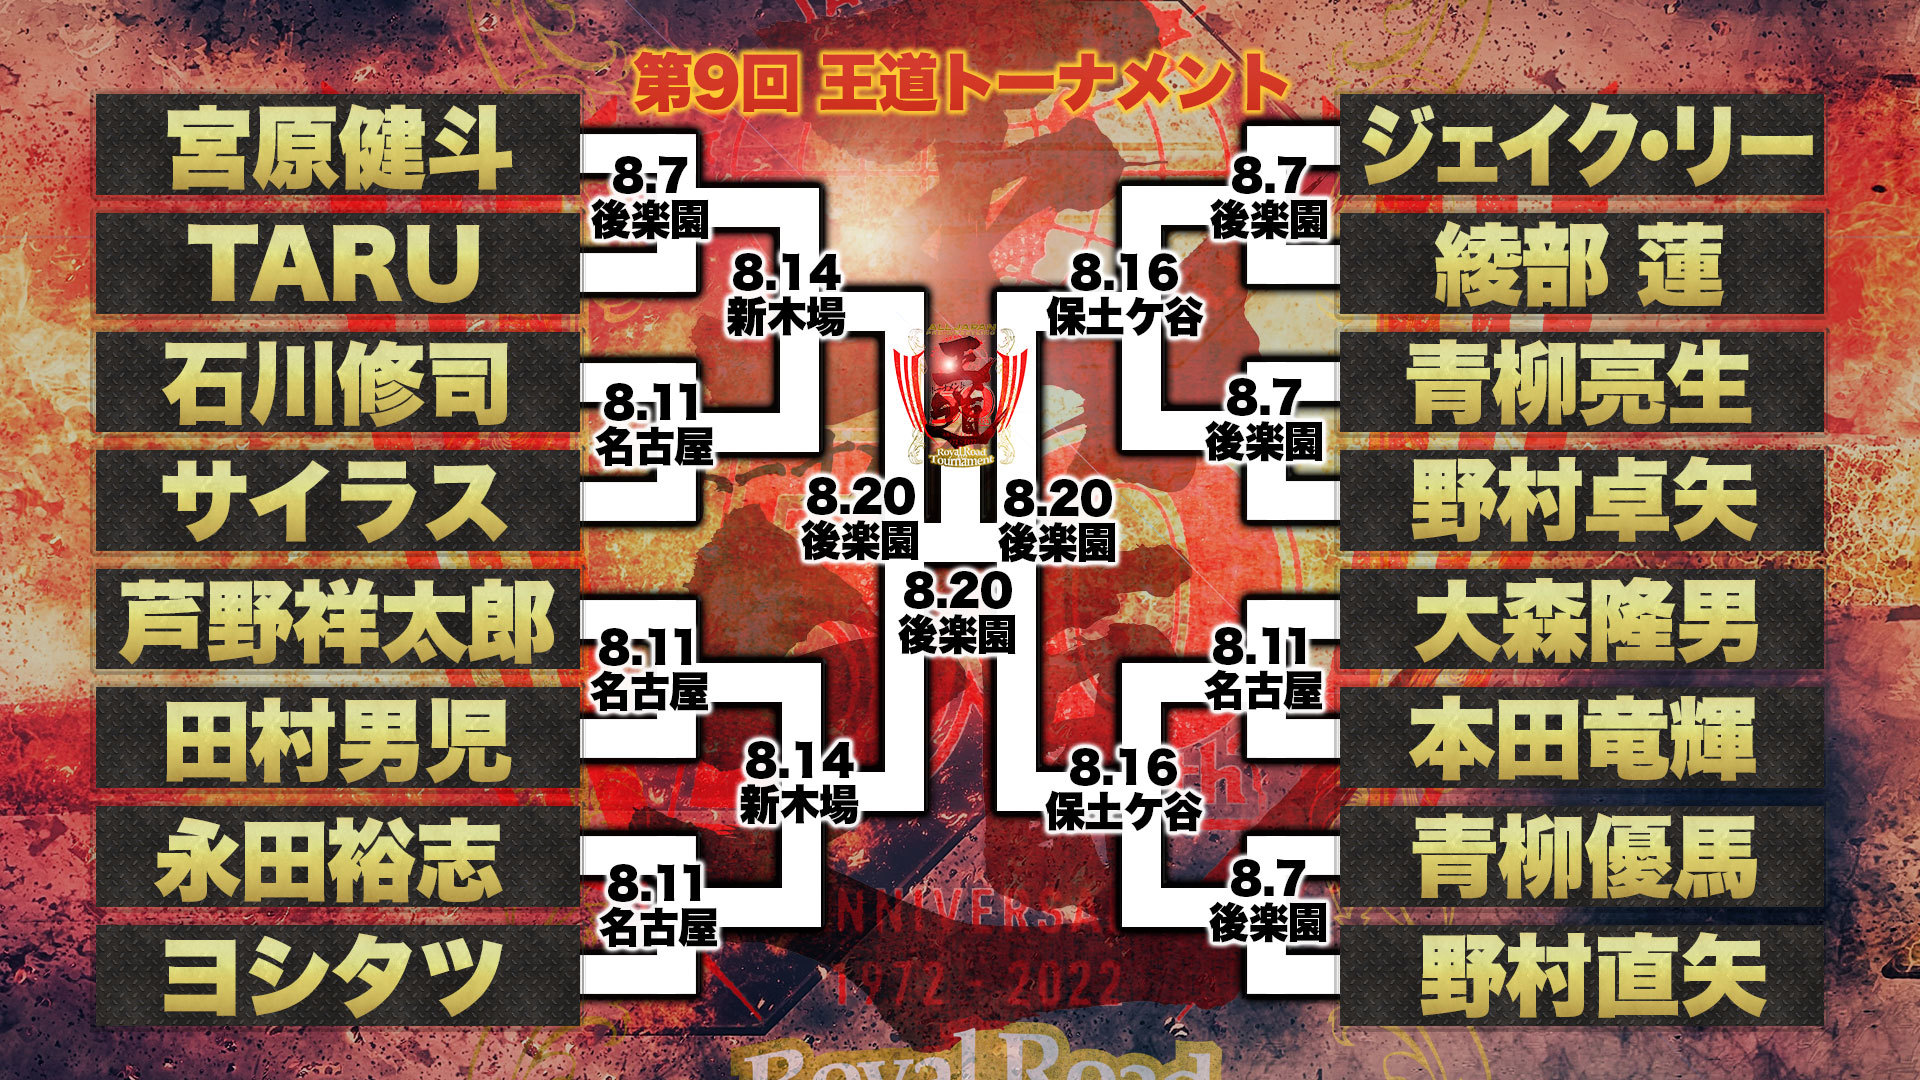 8月20日（土）の全日本プロレス後楽園ホール大会では、「王道トーナメント」の準決勝・決勝が行われる